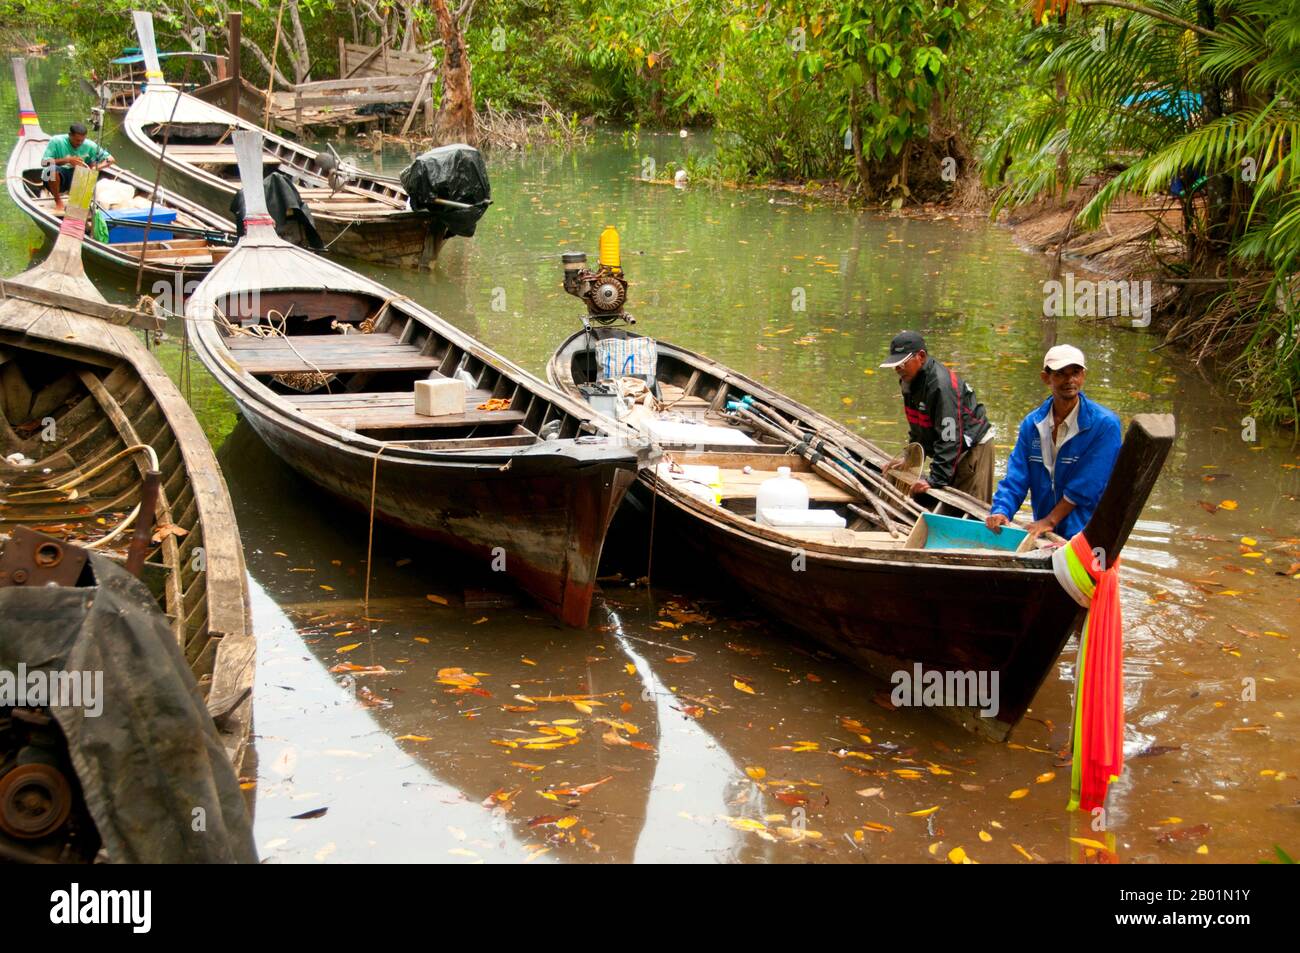 Thailand: Boote auf dem Fluss in Tha Pom Sumpf und Wald, Krabi Küste. Tha Pom (vollständiger Name auf Thai ist Pa Phru Tha Pom Khlong Song Nam) ist ein Torfsumpf und Wald, der hauptsächlich von einem Becken namens Chong Phra Kaew entlang einer natürlichen Wasserstraße verläuft. Die Einheimischen nennen diesen Wasserweg Khlong Song Nam oder „zwei Arten von Wasserkanälen“, weil klares Süßwasser bei Flut auf Meerwasser trifft und sich mit Meerwasser verschmelzt, was zu einer natürlichen Umgebung führt, in der sich Lumphi-Palmen (Eleiodoxa conferta) treffen und mit Mangrovenwäldern vermischen. Stockfoto